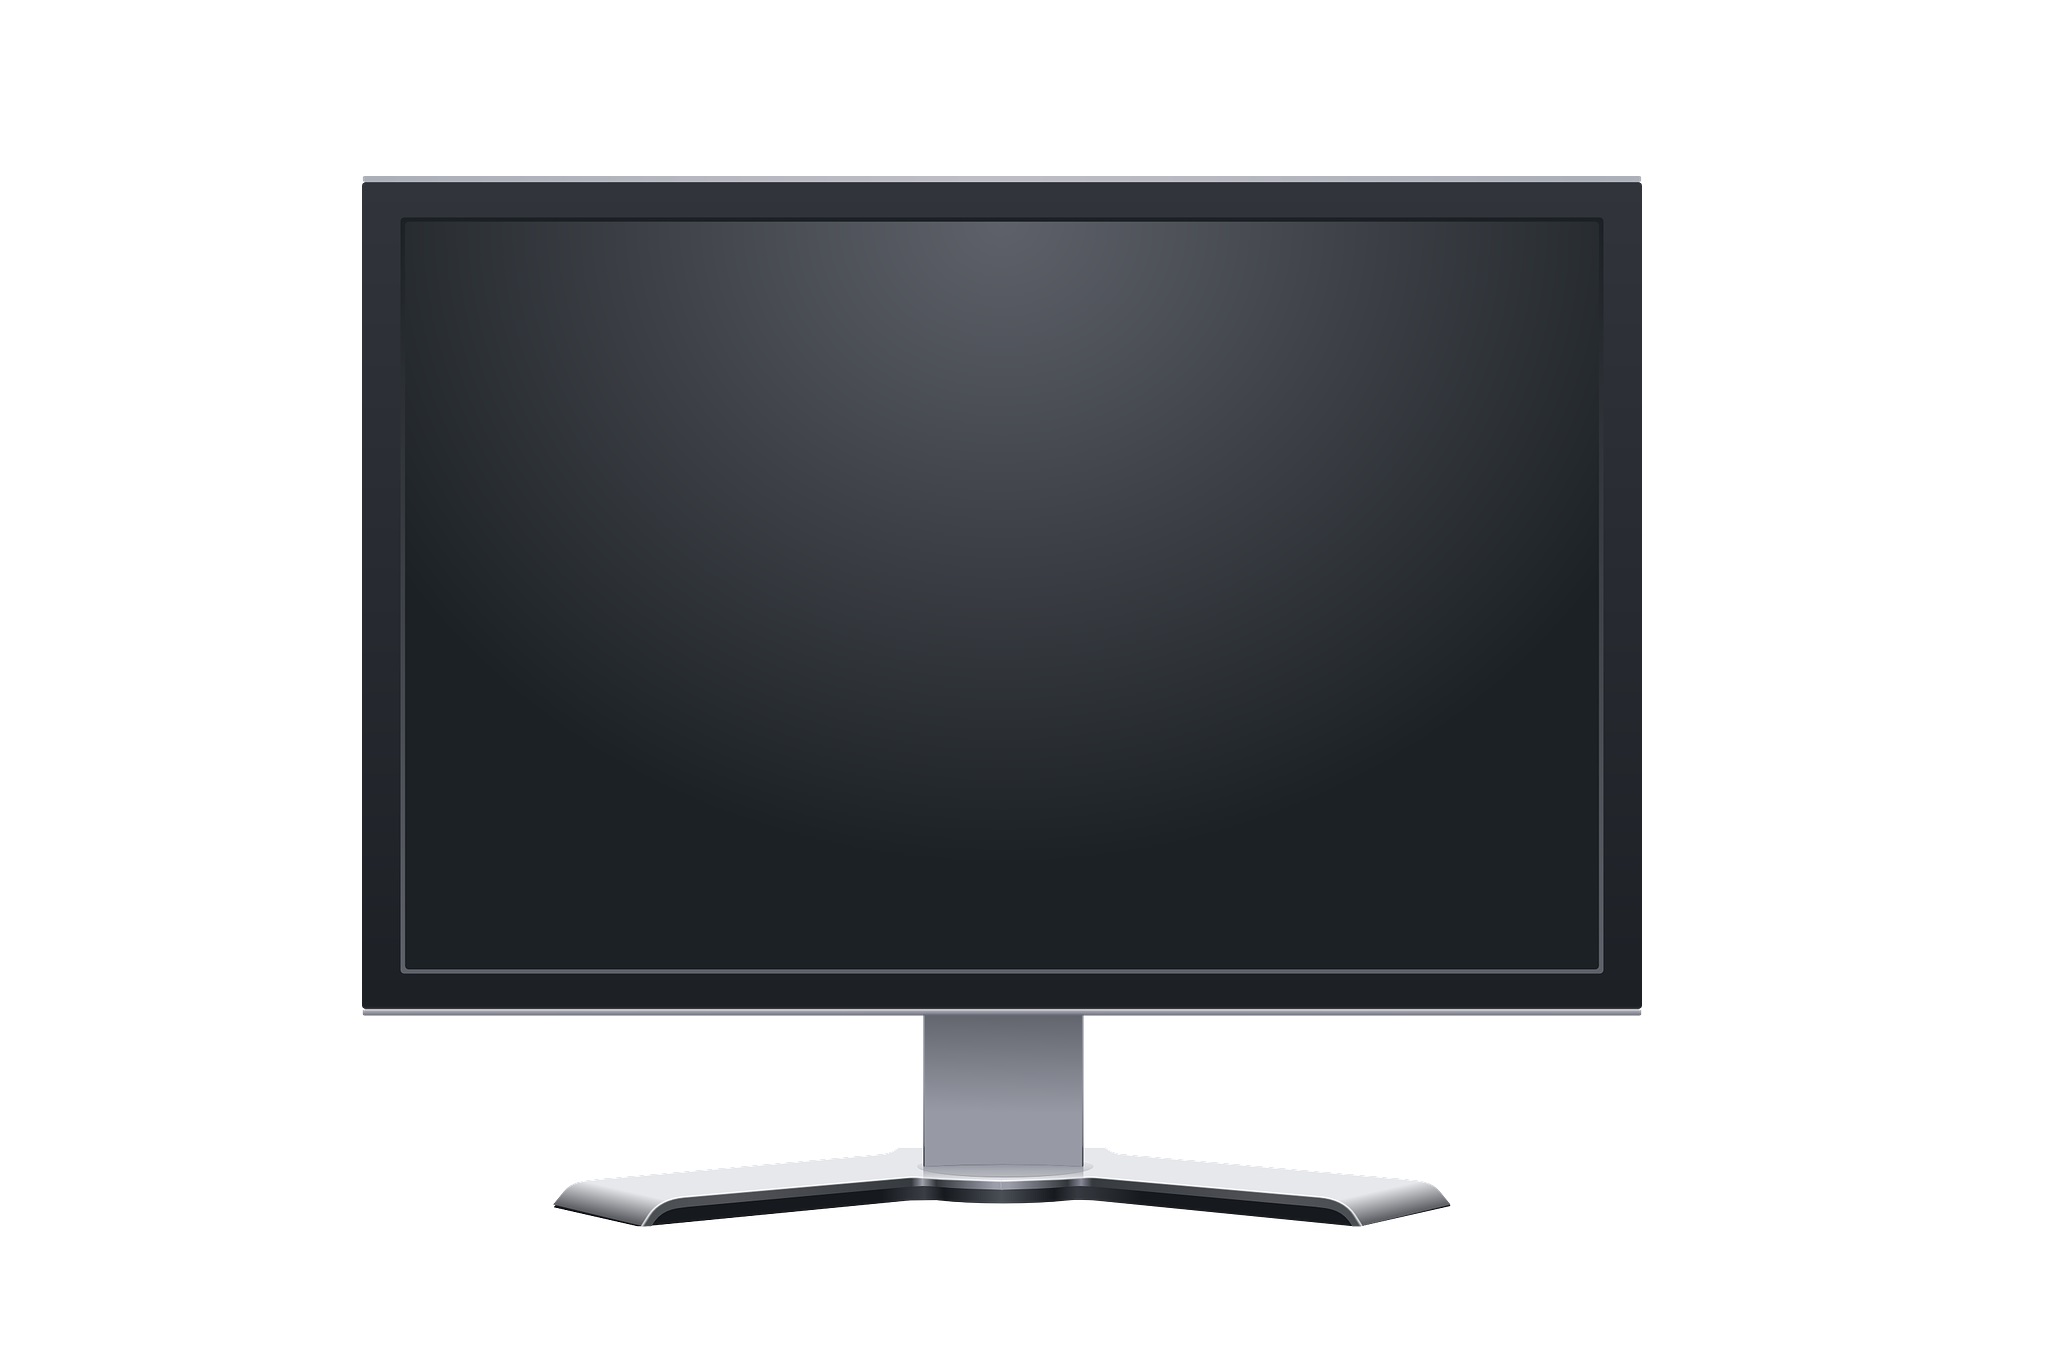 5 usos que puedes darle al anclaje VESA de tu monitor o TV si no lo usas